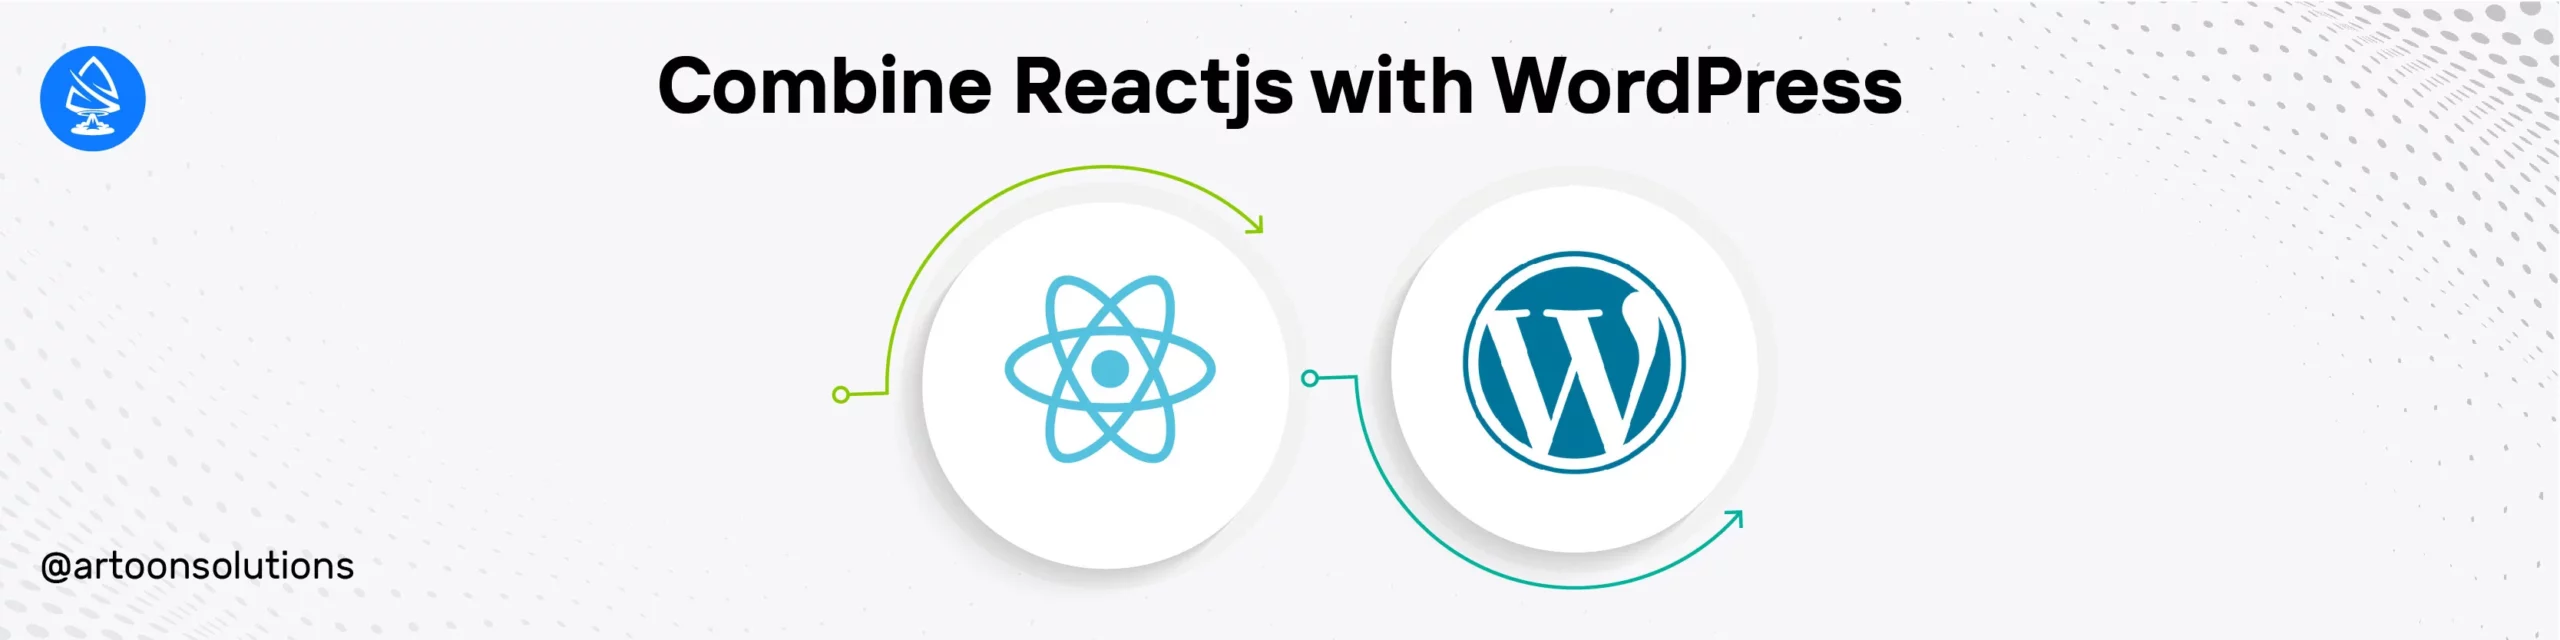 Combine Reactjs with WordPress